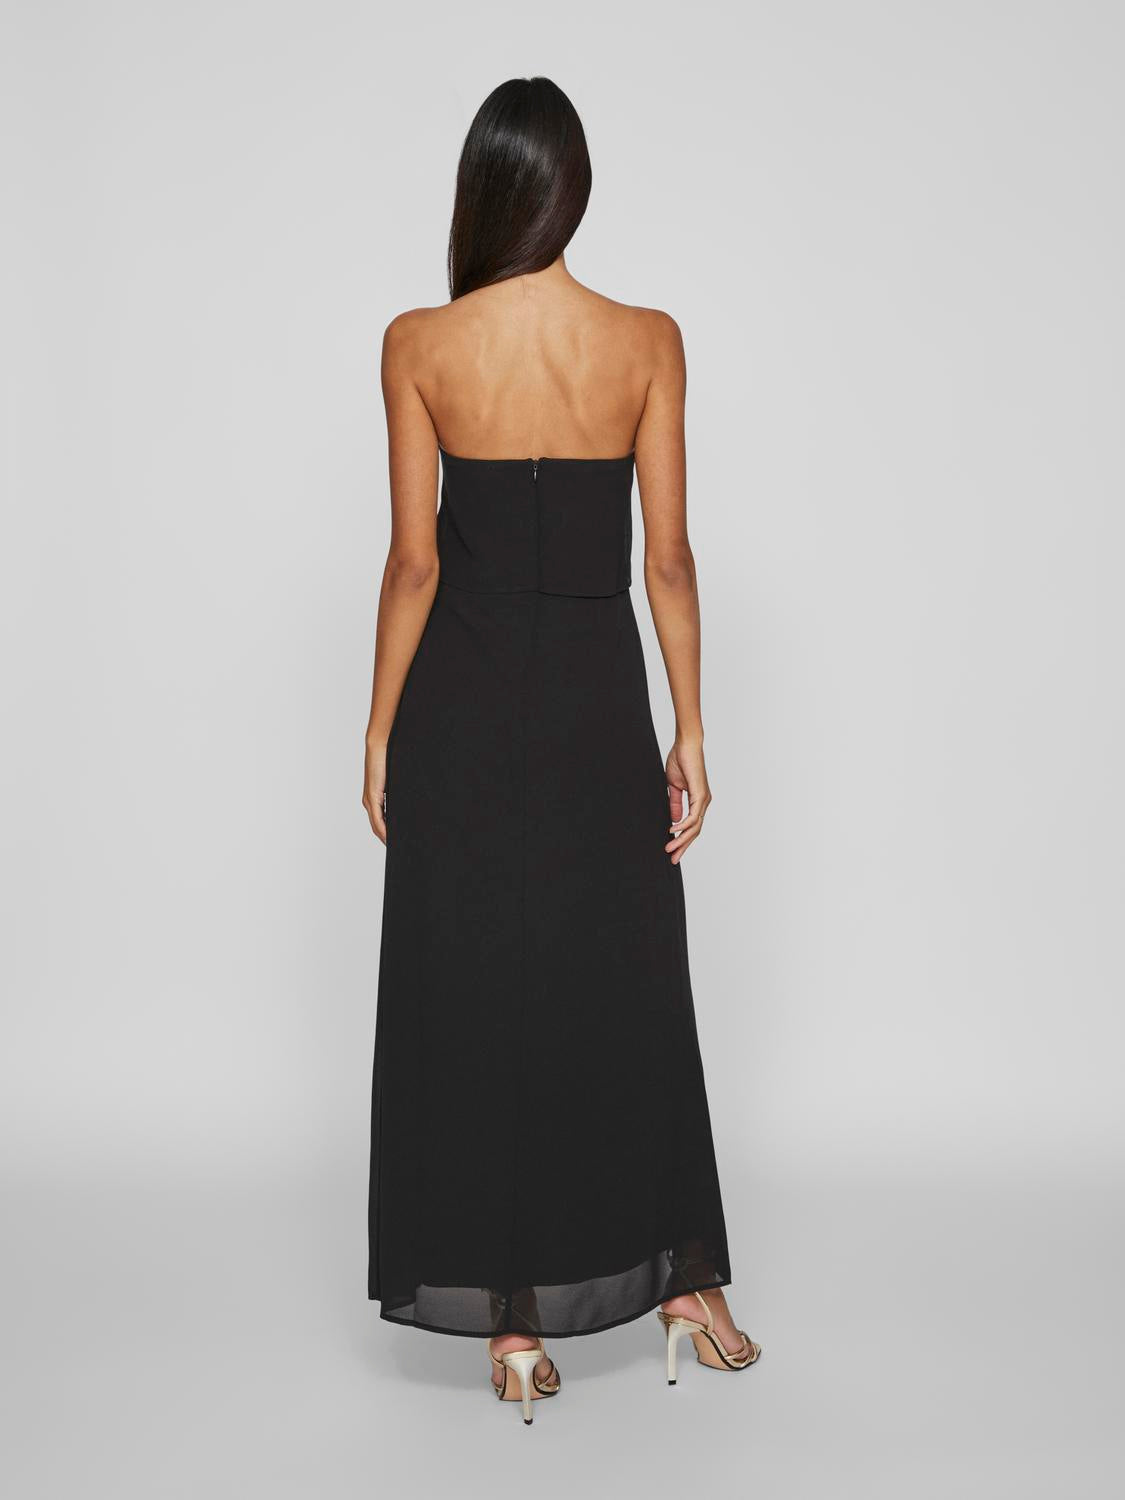 VIMILINA Dress - Black